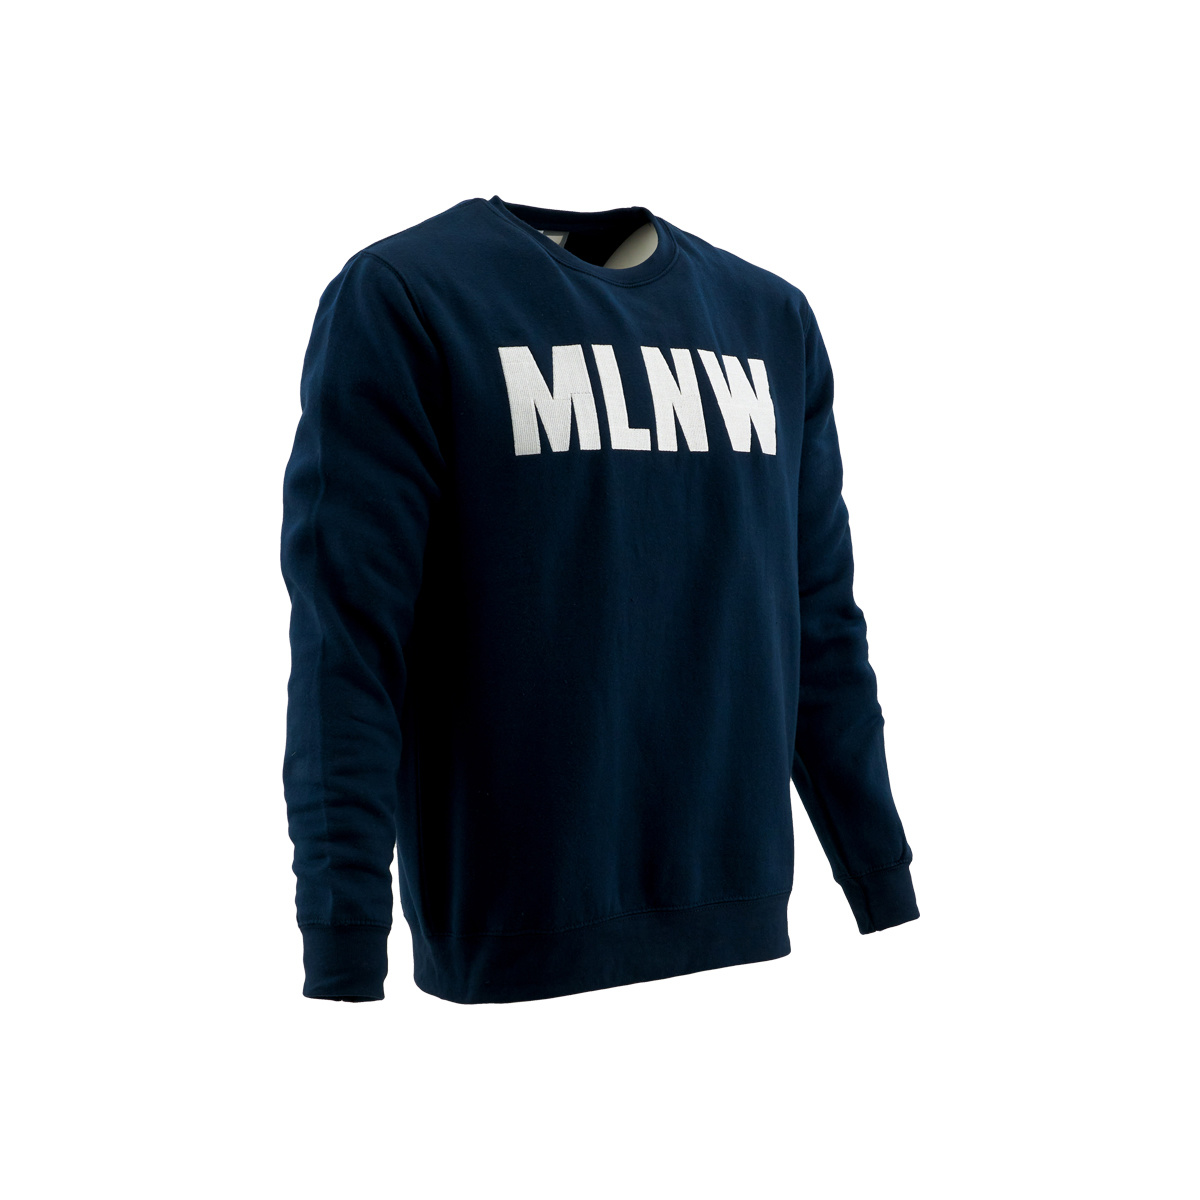 String string ik klaag Verklaring Sweater donkerblauw MLNW - KV Mechelen